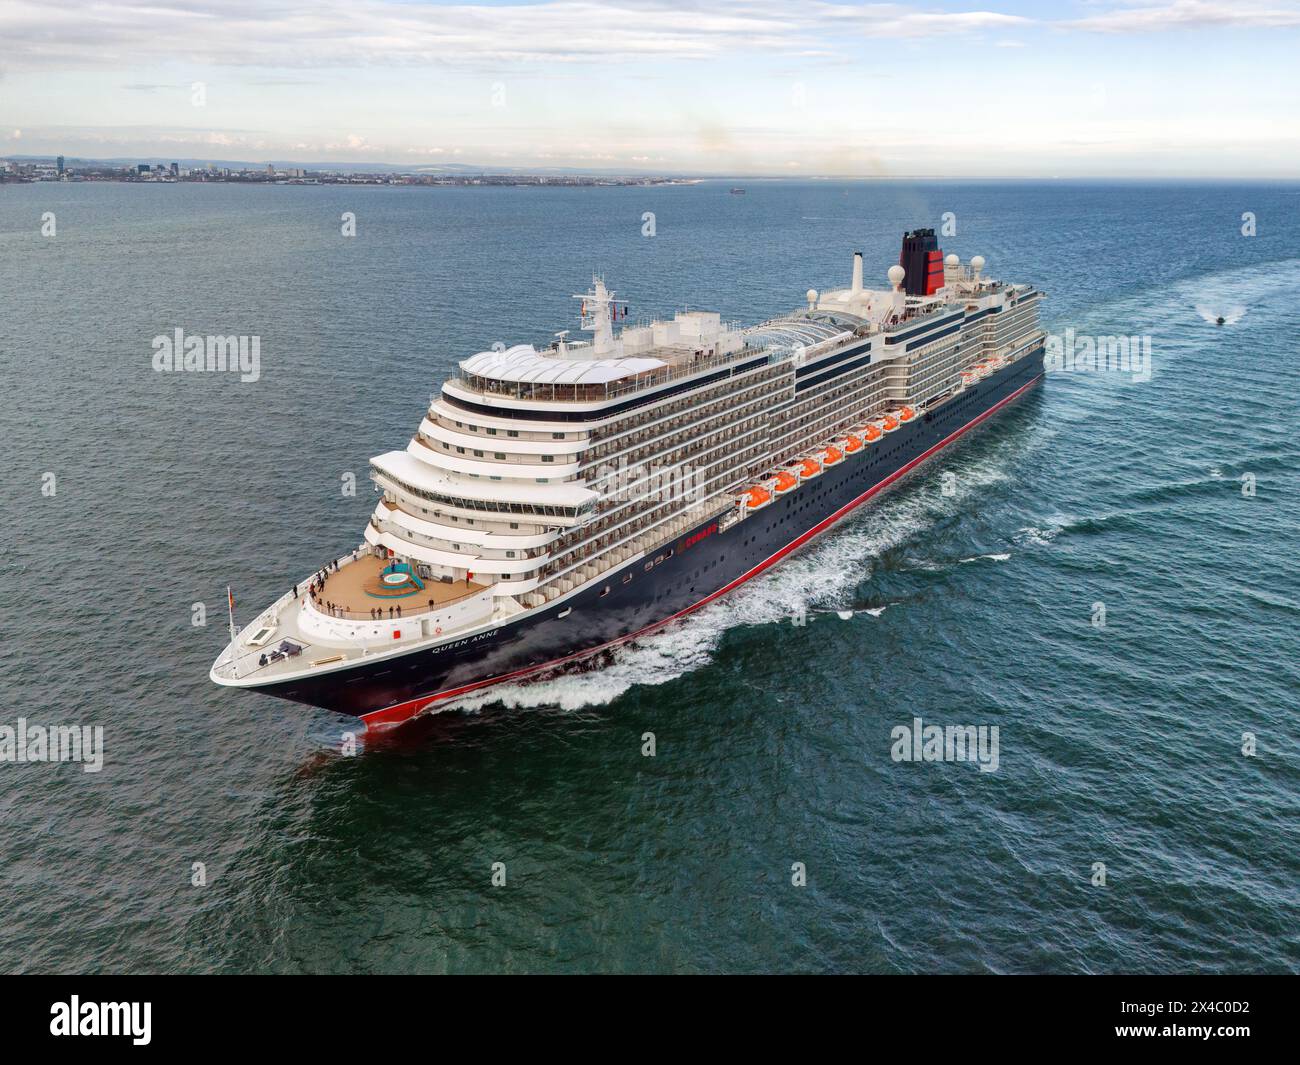 Première arrivée au Royaume-Uni du Queen Anne, un navire de croisière de classe Pinnacle exploité par Cunard Line, qui fait partie de la Carnival Corporation le 30 avril 2024. Banque D'Images